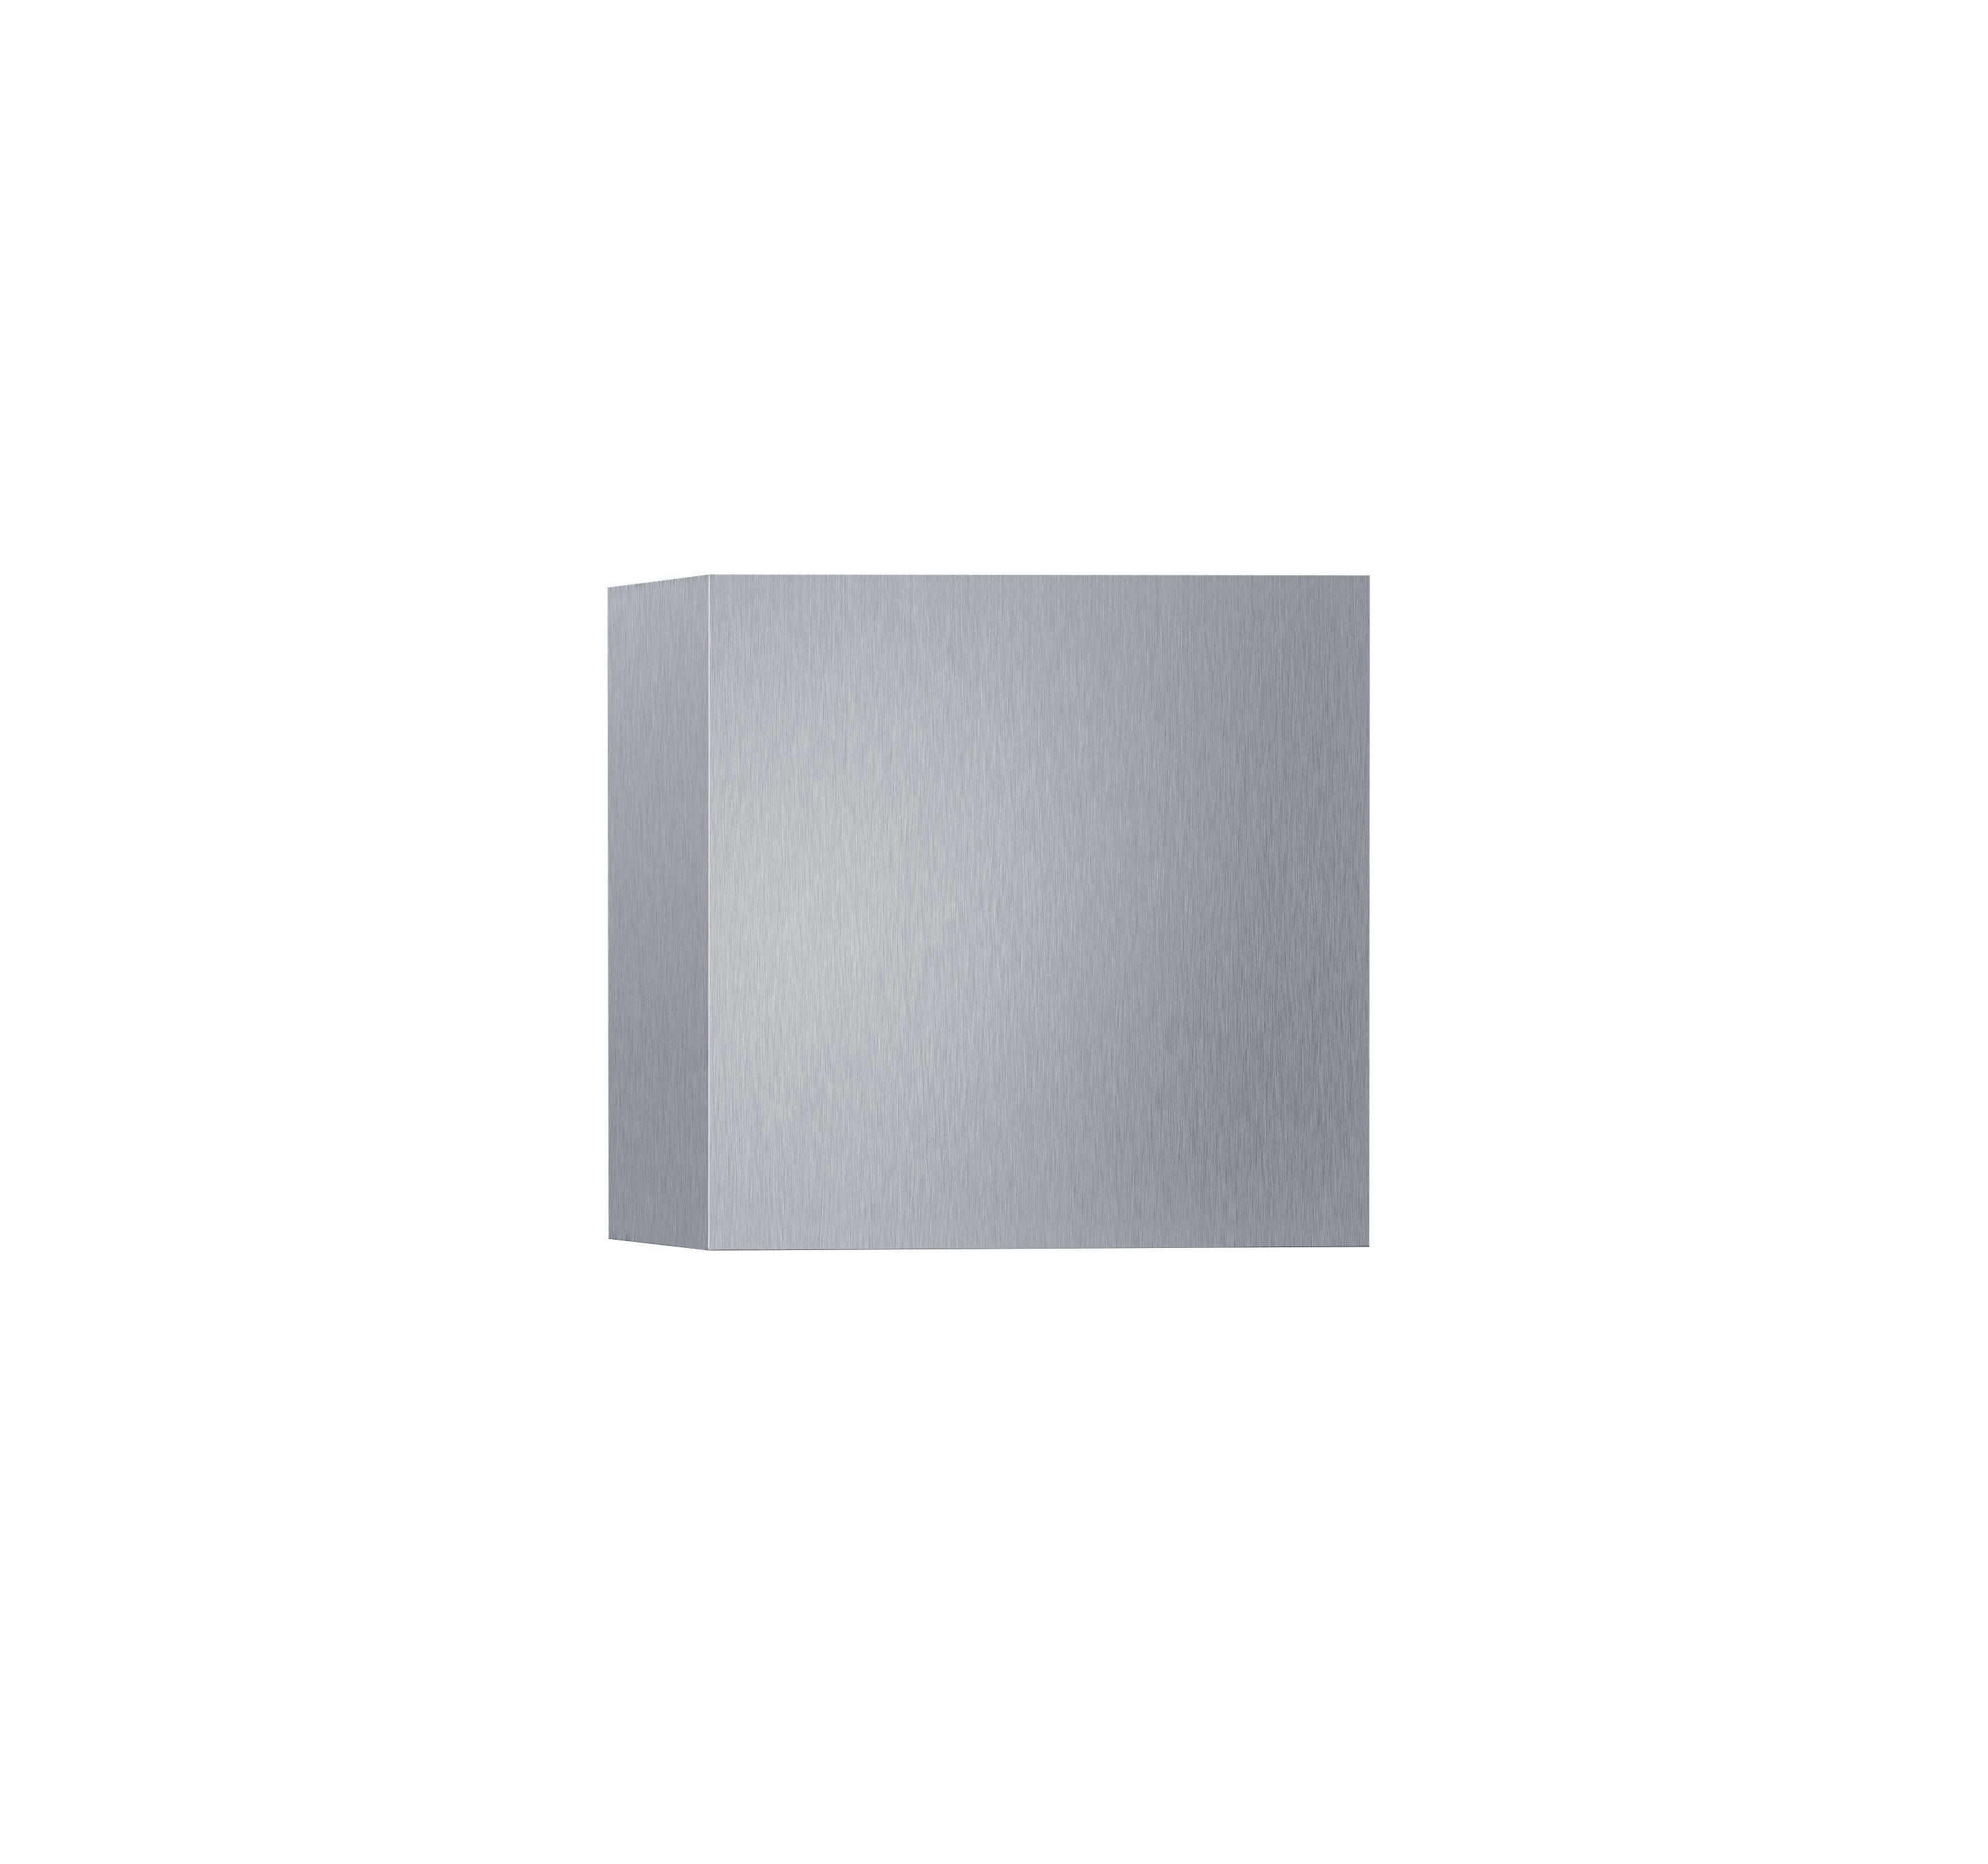 AUßENWANDLEUCHTE  - Nickelfarben, Design, Metall (10/10/10cm) - Helestra